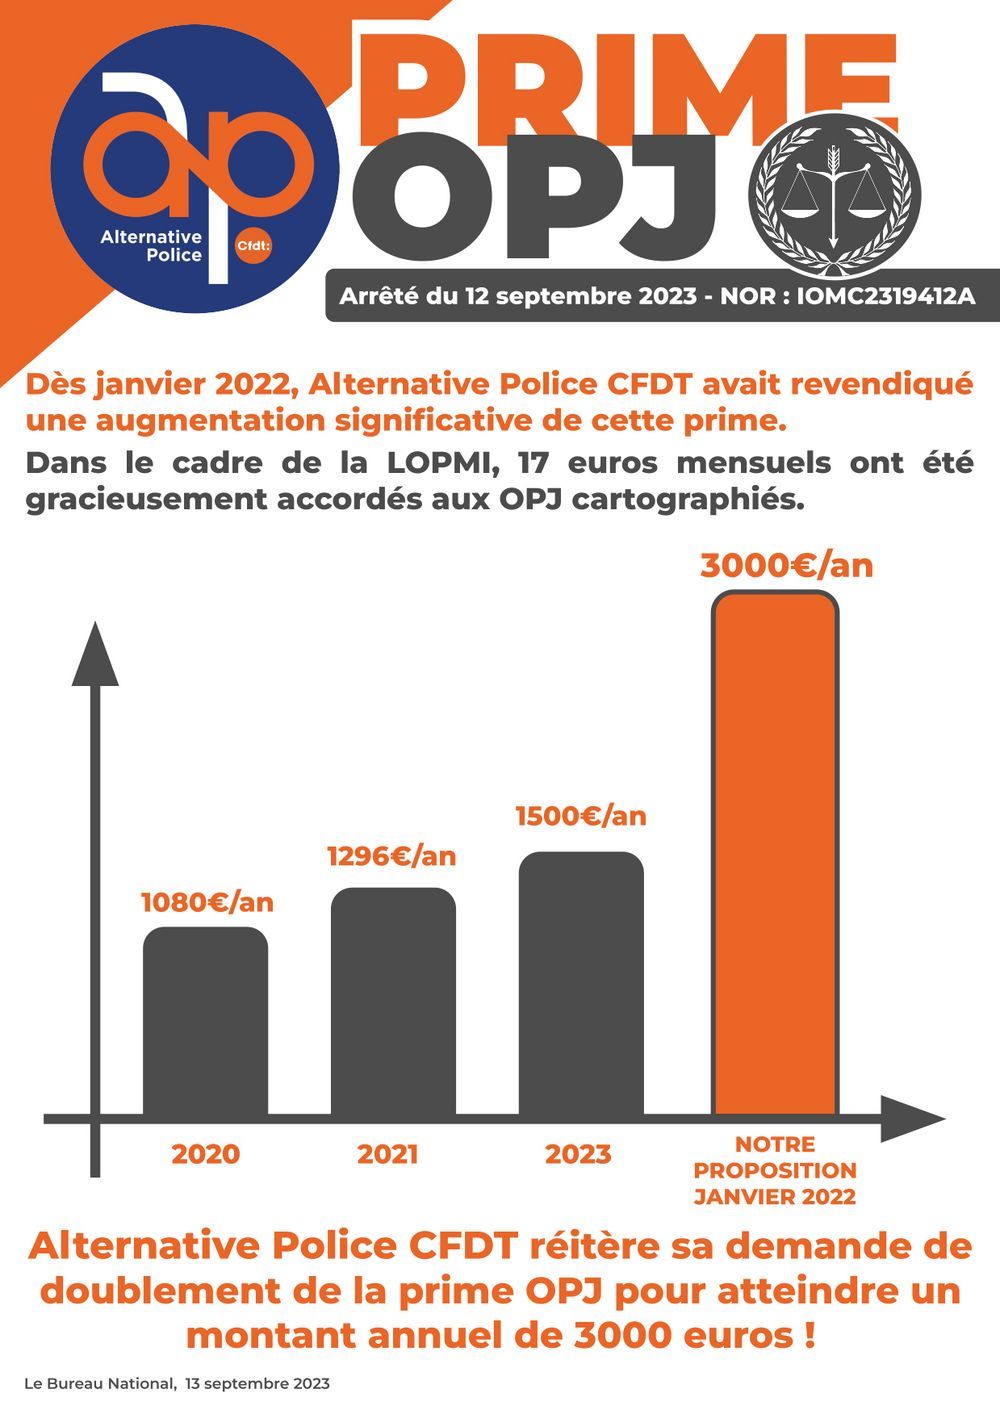 Prime OPJ : Alternative Police CFDT réitère sa demande de doublement de la prime